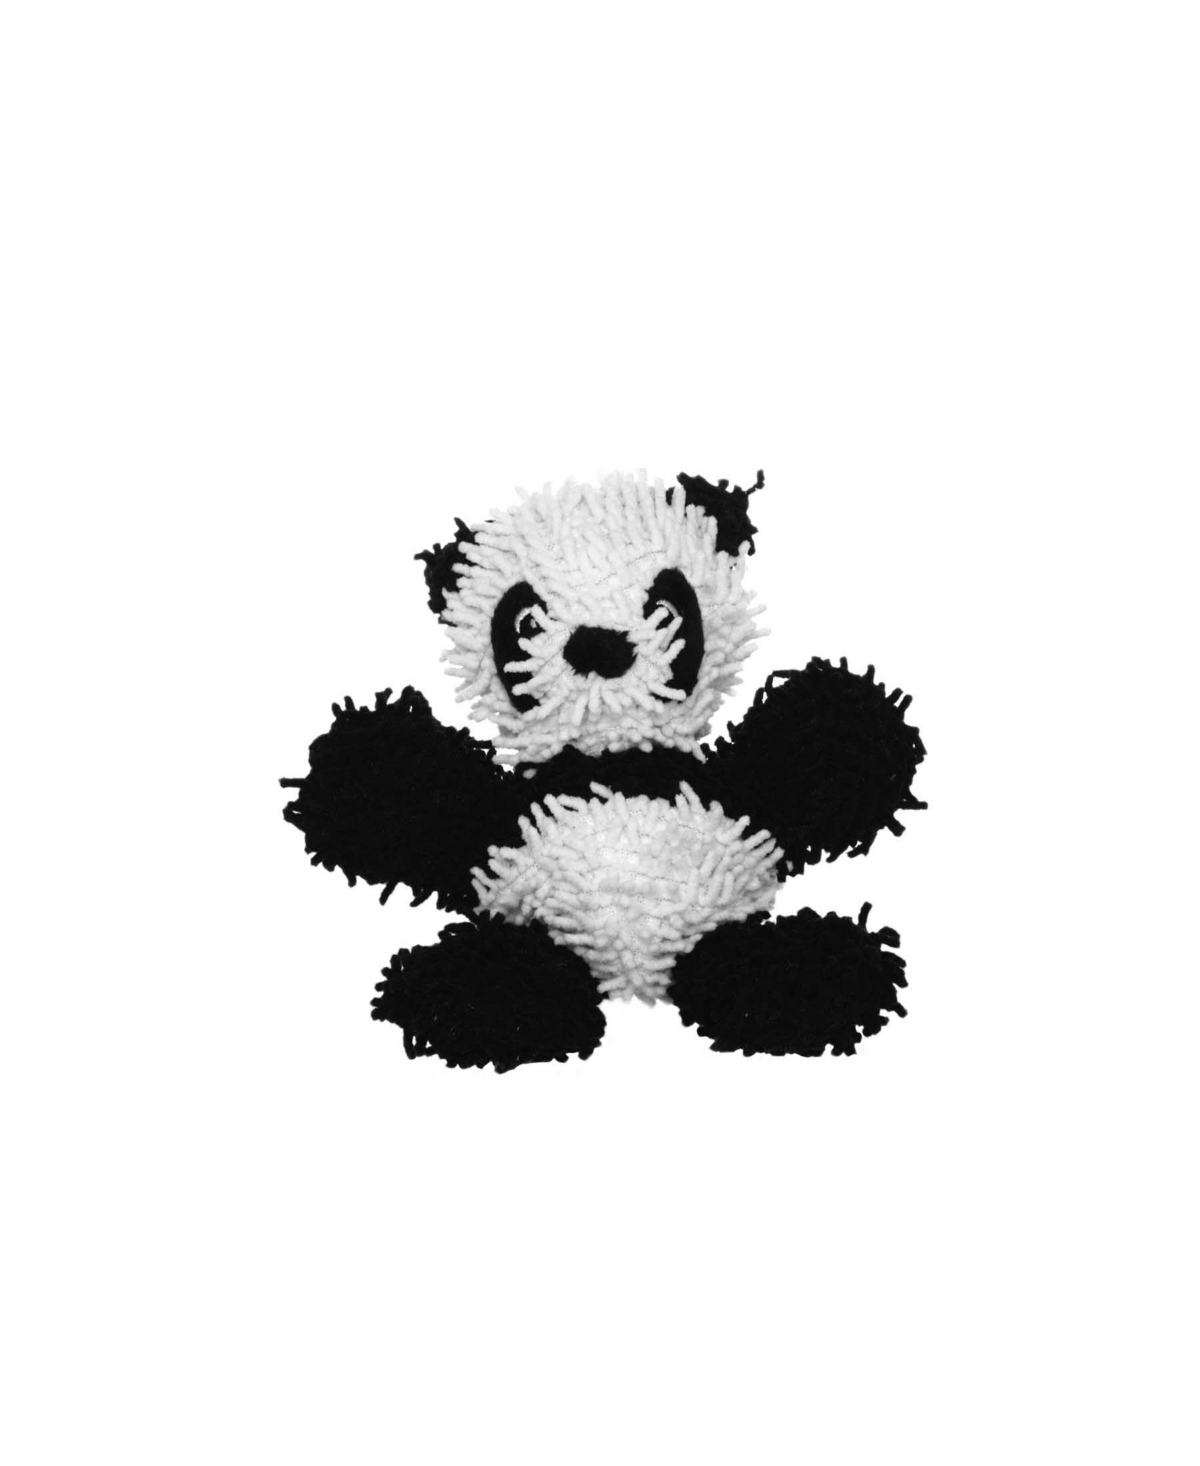 Jr Microfiber Ball Panda, Dog Toy - White